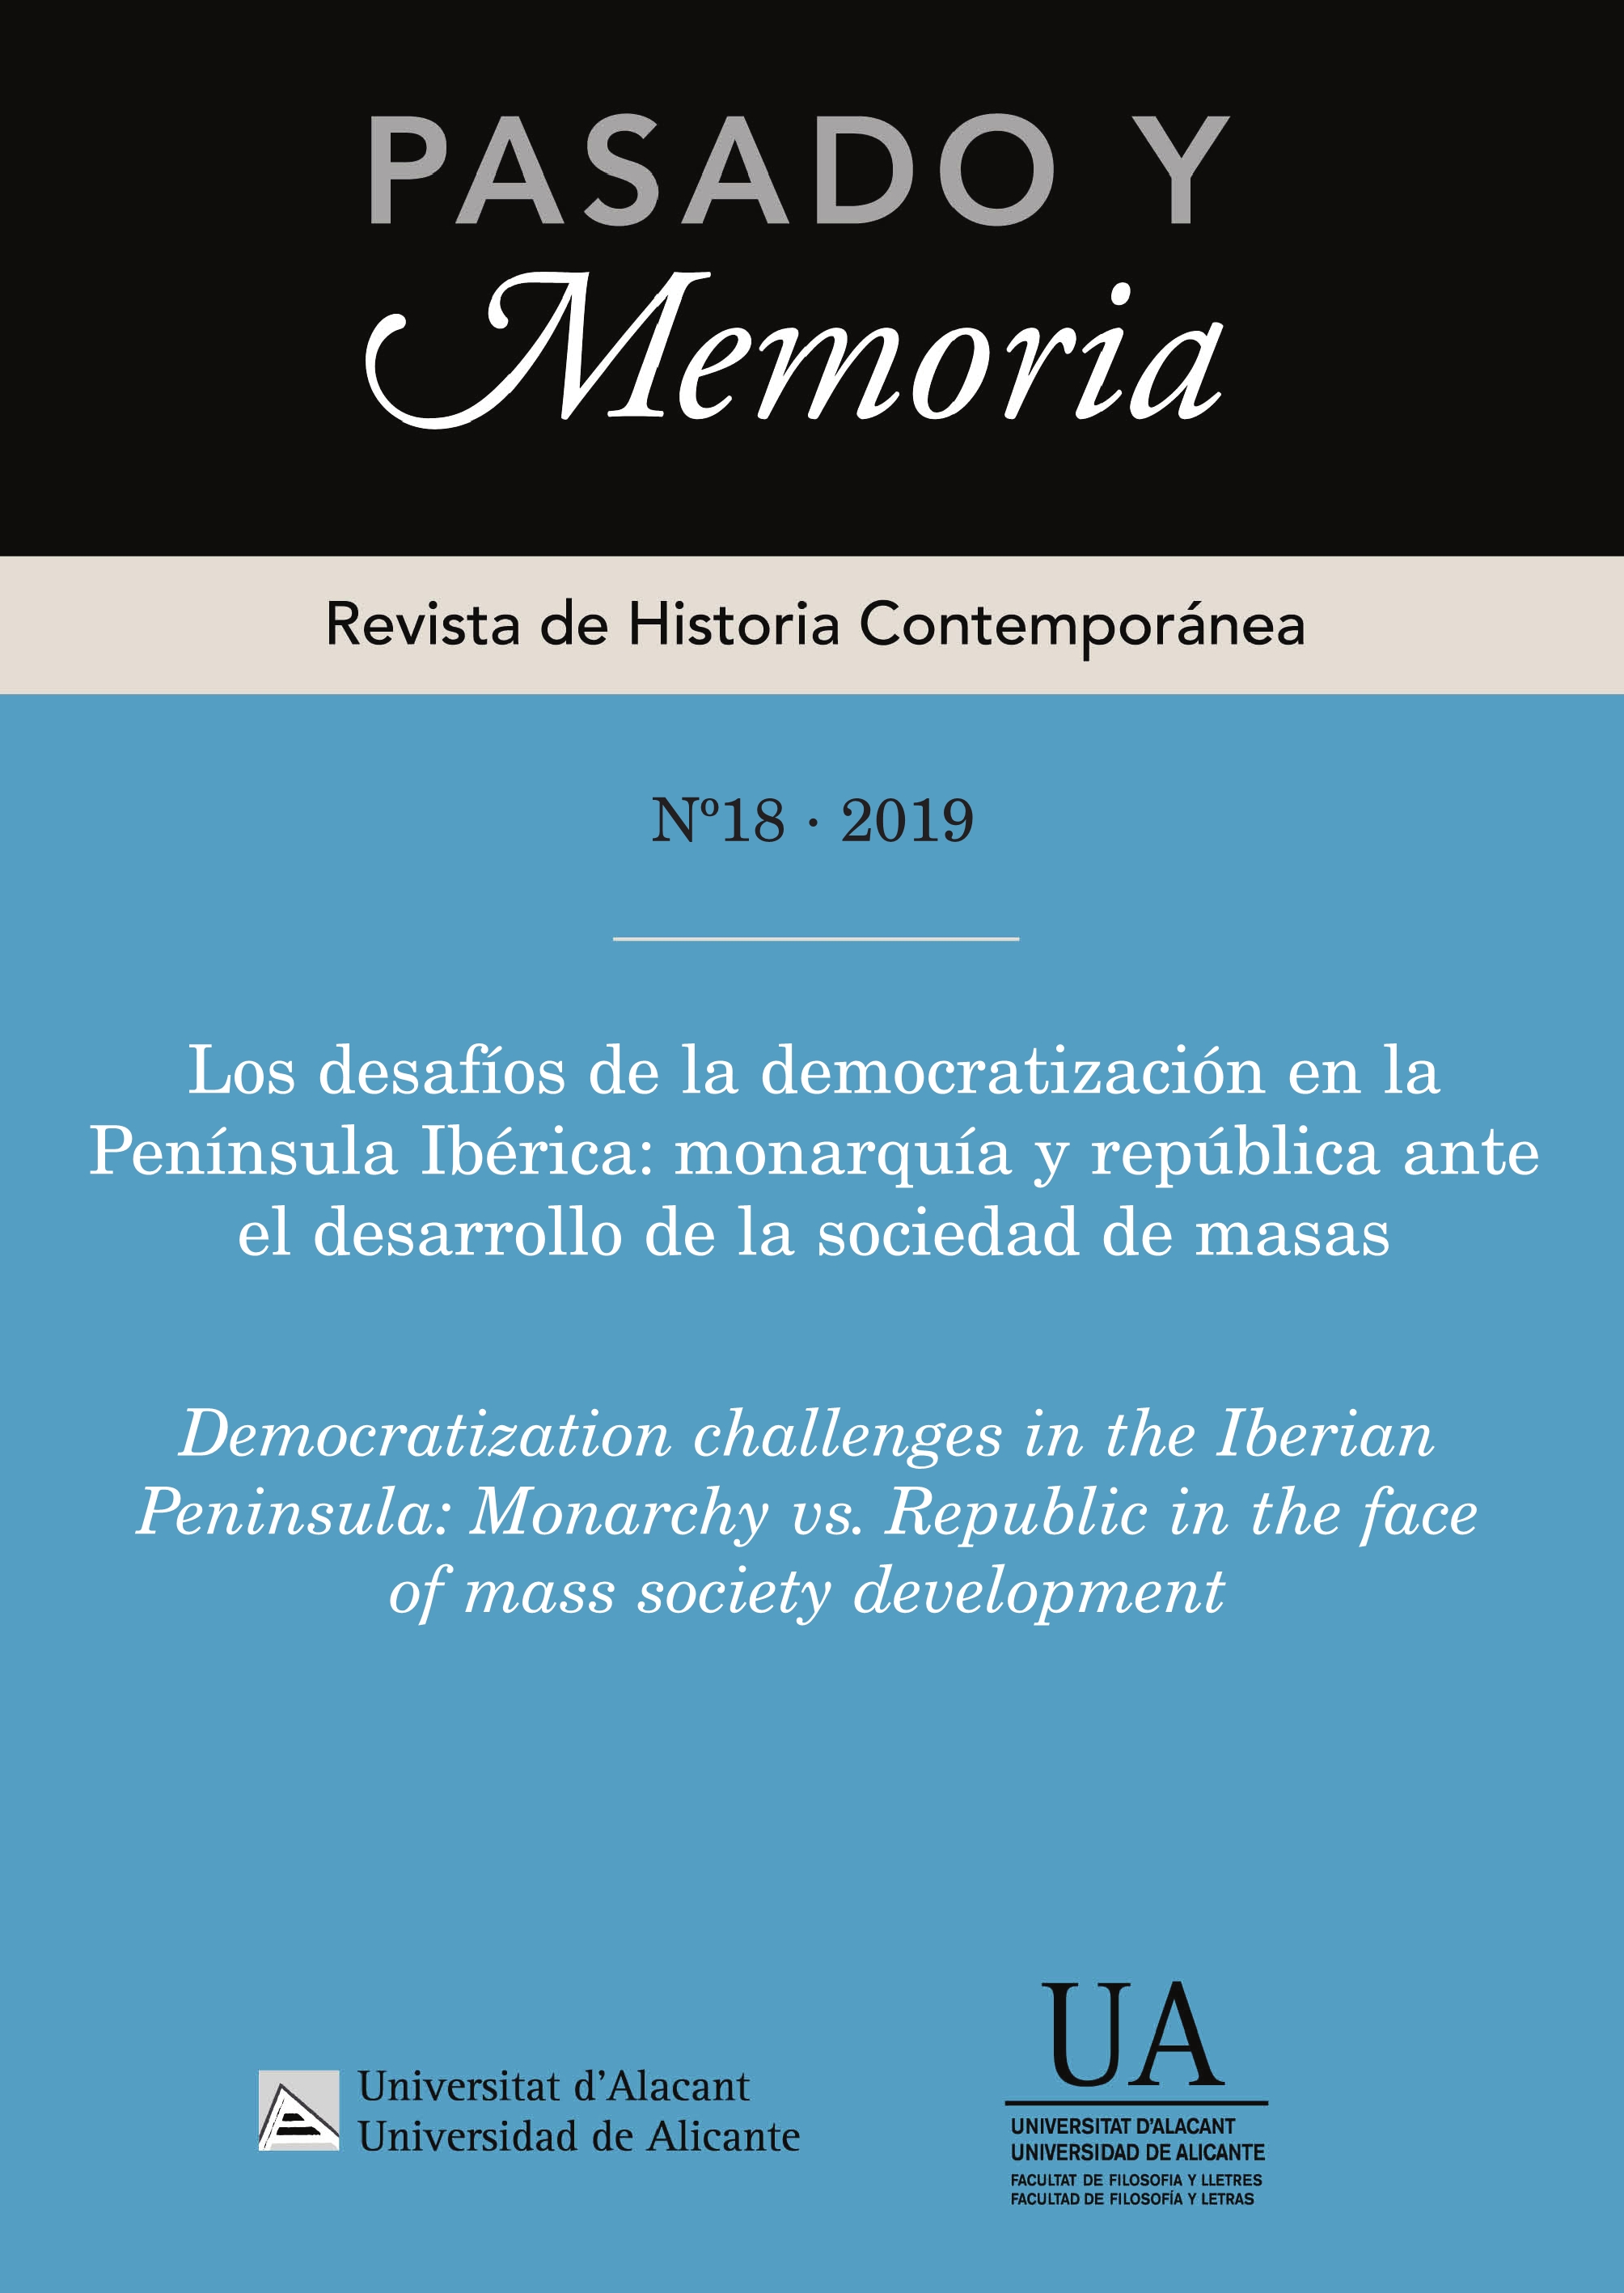 					Ver Núm. 18: Los desafíos de la democratización en la Península Ibérica: monarquía y república ante el desarrollo de la sociedad de masas
				